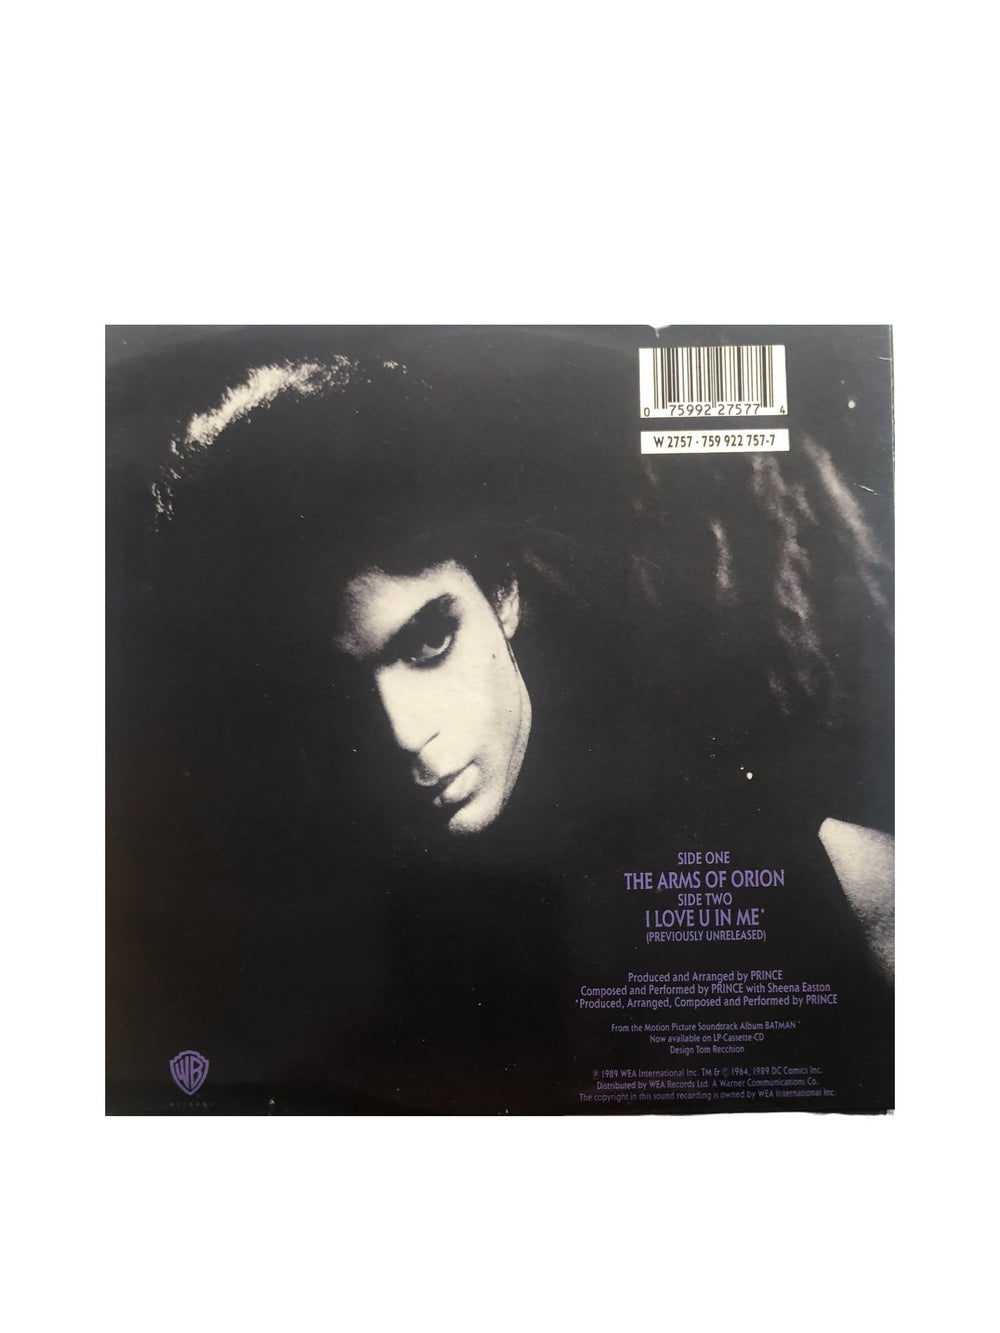 Prince – & Sheena Easton Arms Of Orion Vinyl 7" EU Glossy Preloved: 1989